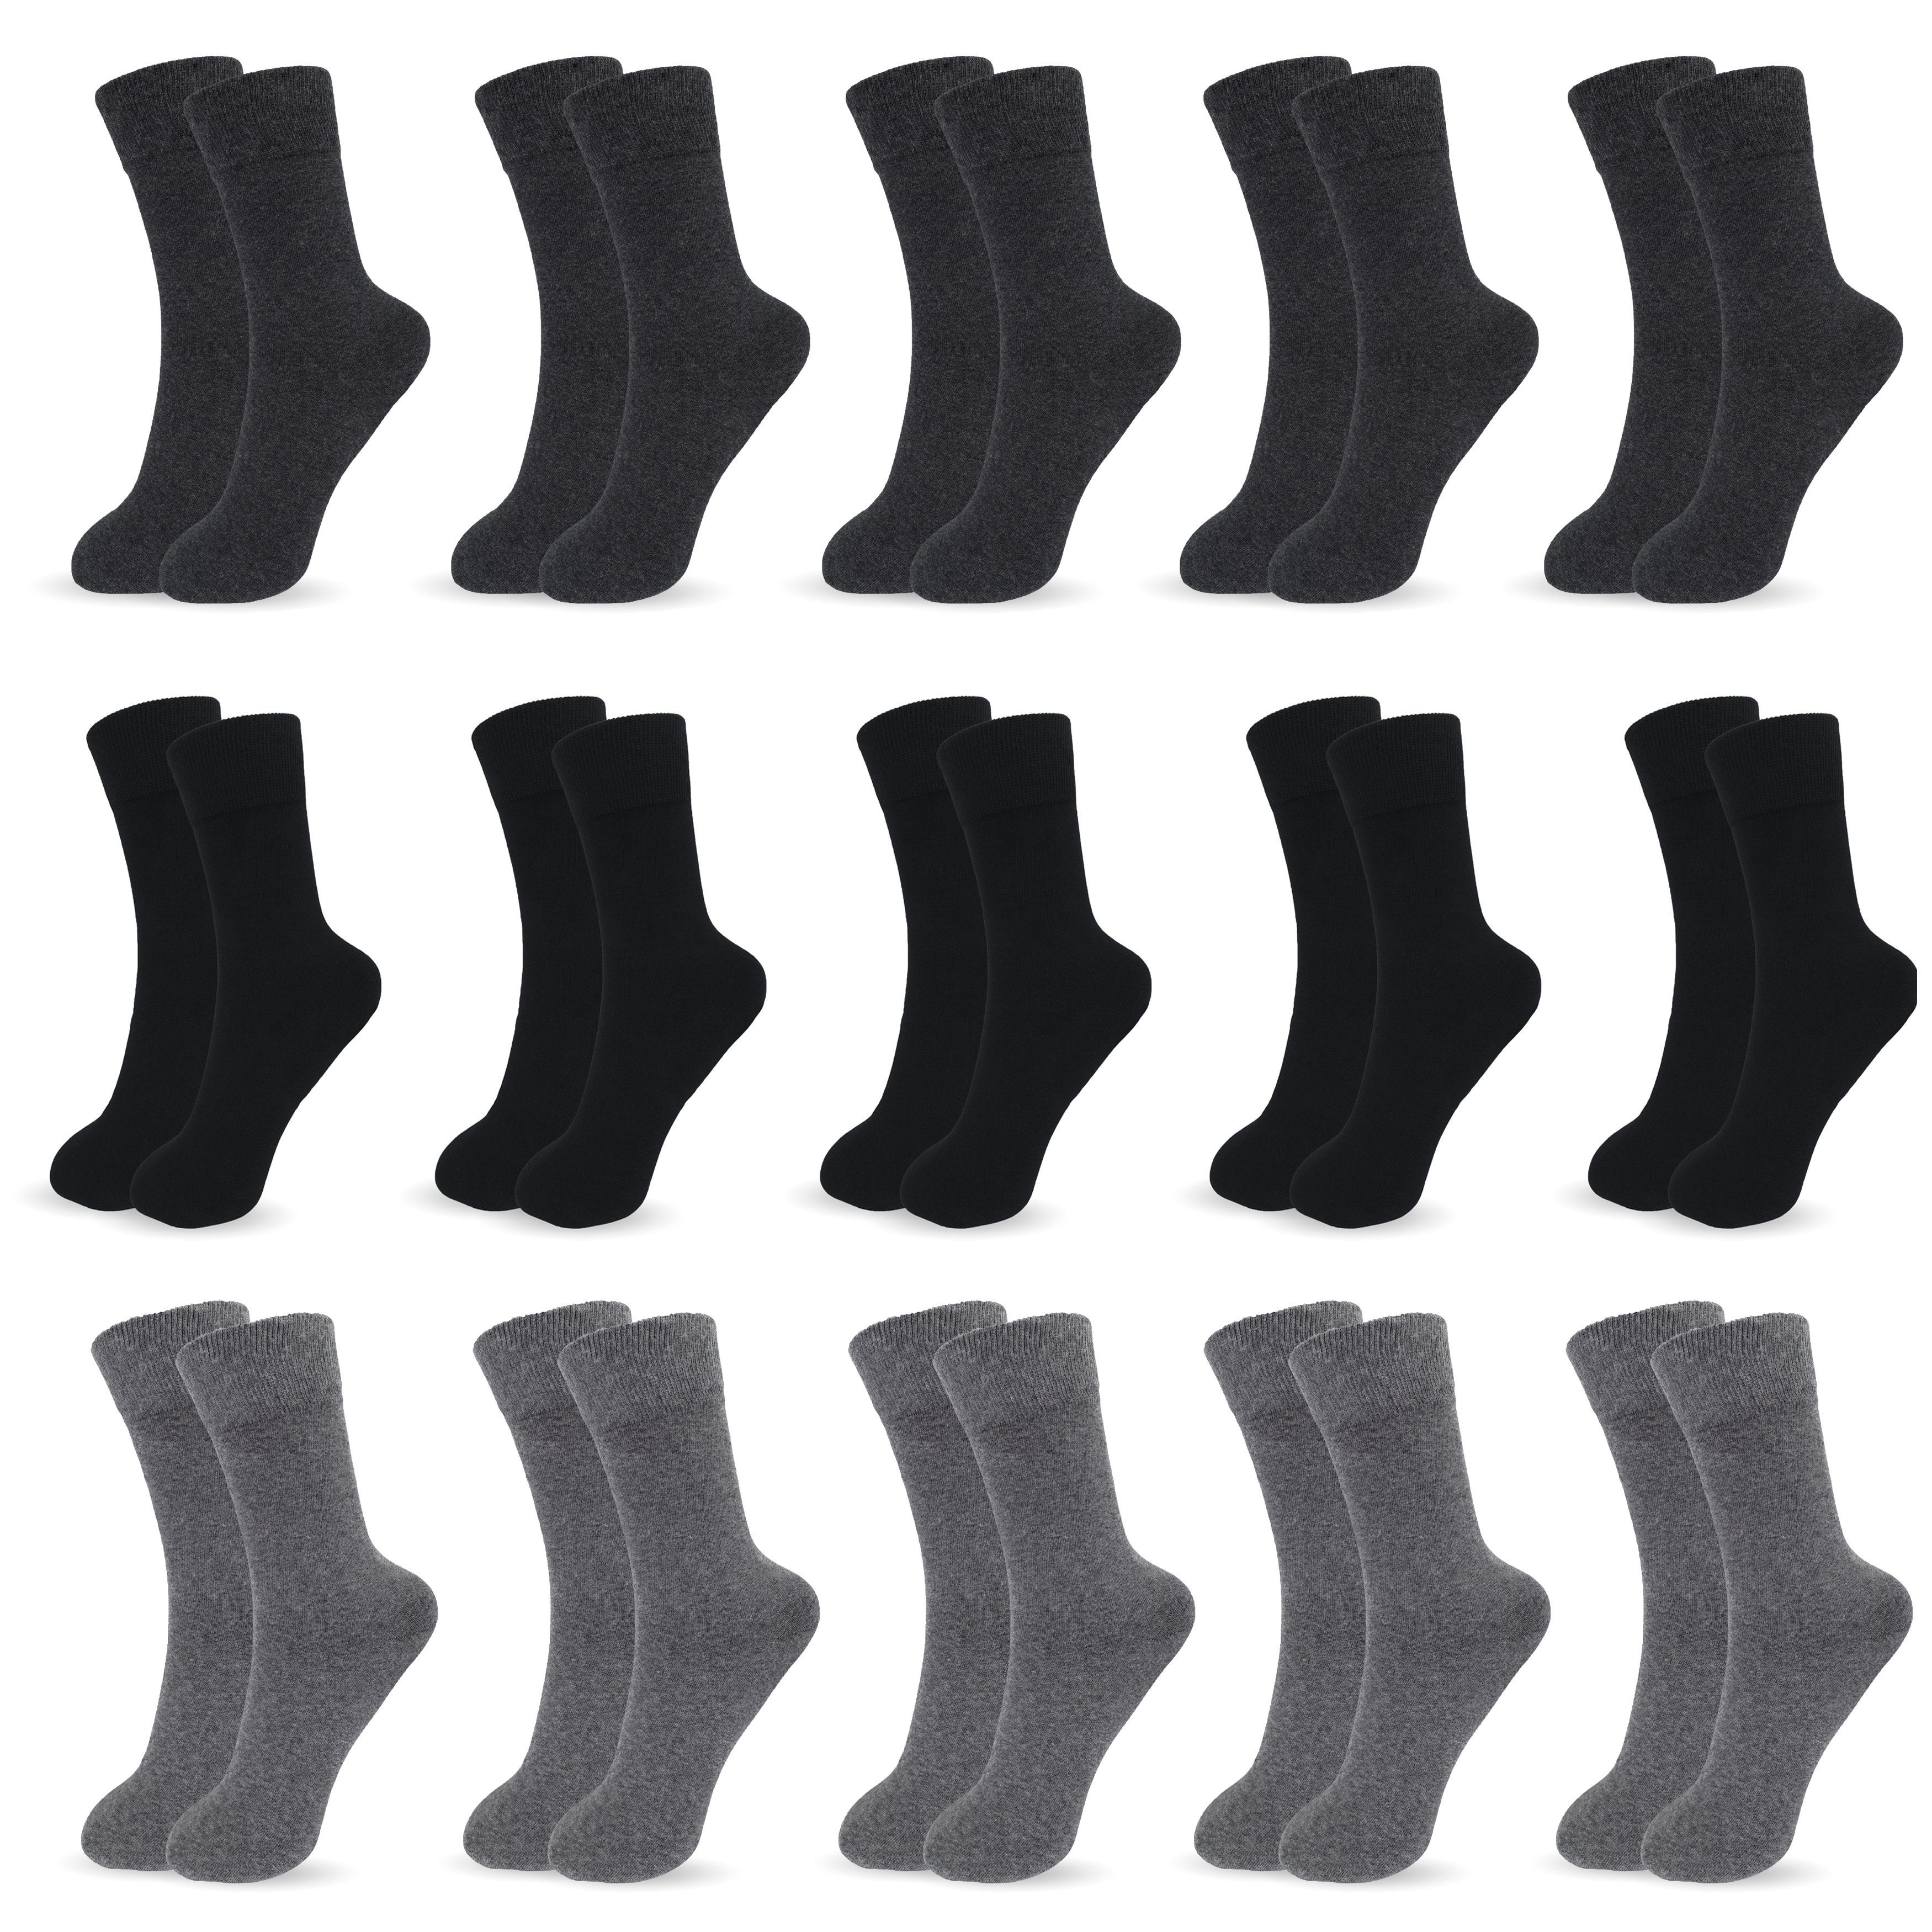 SO.I Businesssocken Herrensocken Lange Freizeit-Socken für Herren aus Baumwolle (Größen: 39-46, 5-15er Pack) Atmungsaktiver Stoff 5xAnthrazitgrau+5xSchwarz+5xGrau